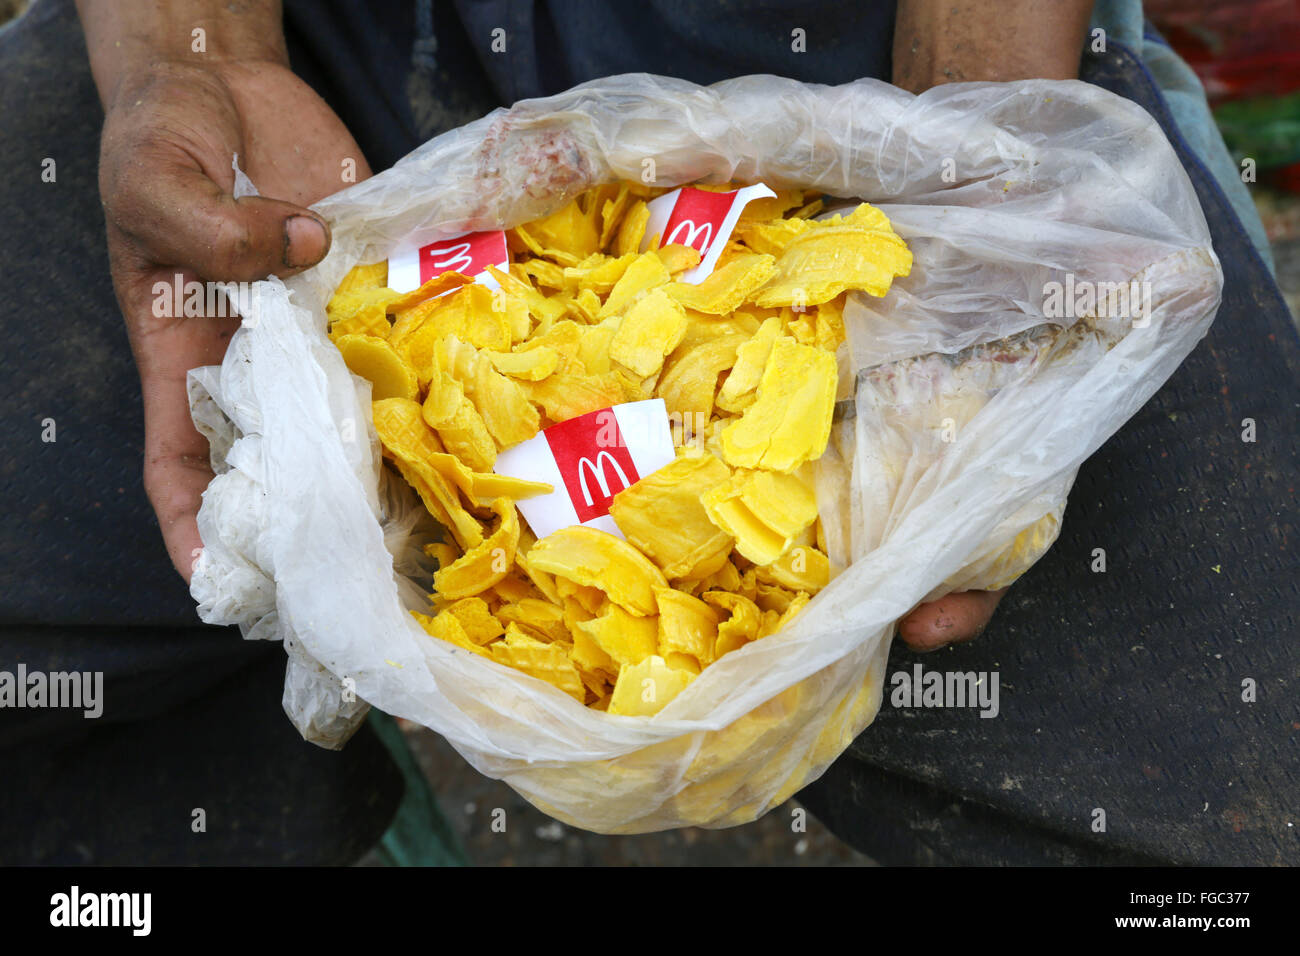 Joven come los restos de comida de McDonalds encontrados en los residuos en el relleno sanitario de la ciudad de Quezon integrado "vertedero" en barangay (aldea) Payatas en Quezon City, Metro Manila, Filipinas Foto de stock